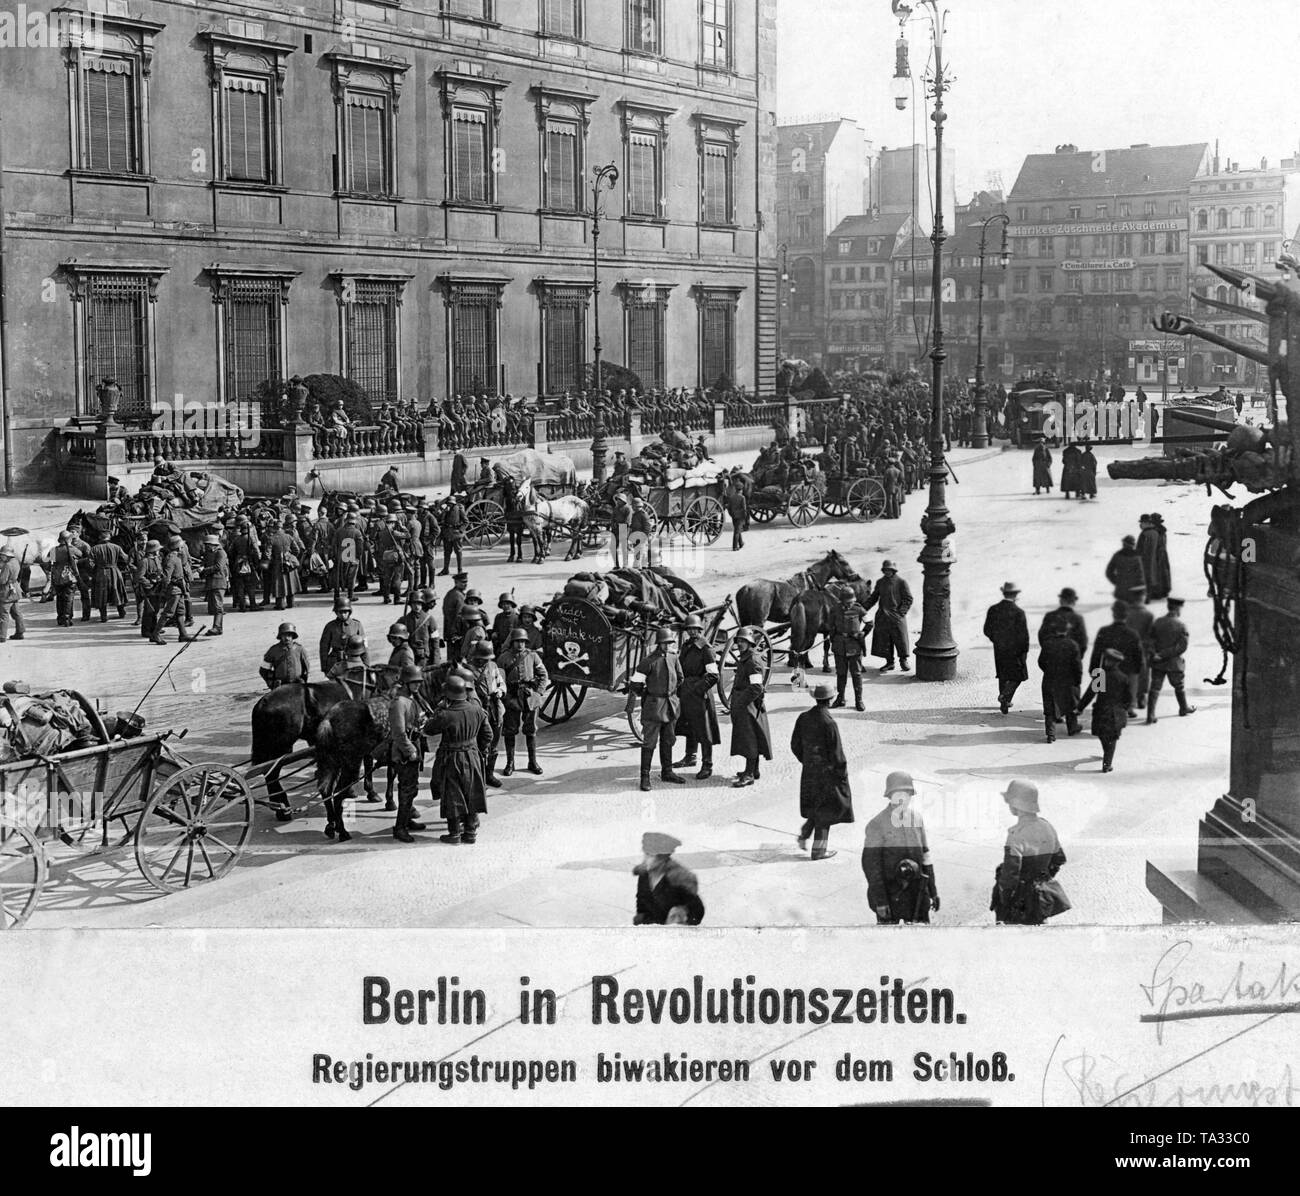 Im Zuge der Berliner Maerzkaempfe (März kämpft) im Jahr 1919 wurde von der Regierung loyalen Soldaten vor dem Berliner Stadtschloss gesammelt. Ein weißes Totenkopf und der Aufschrift "Nieder mit Spartakus" (Unten mit Spartacus) ist auf einem Wagen lackiert. Auf der rechten Seite ist ein Teil der nationalen Kaiser-Wilhelm-Denkmal. Stockfoto